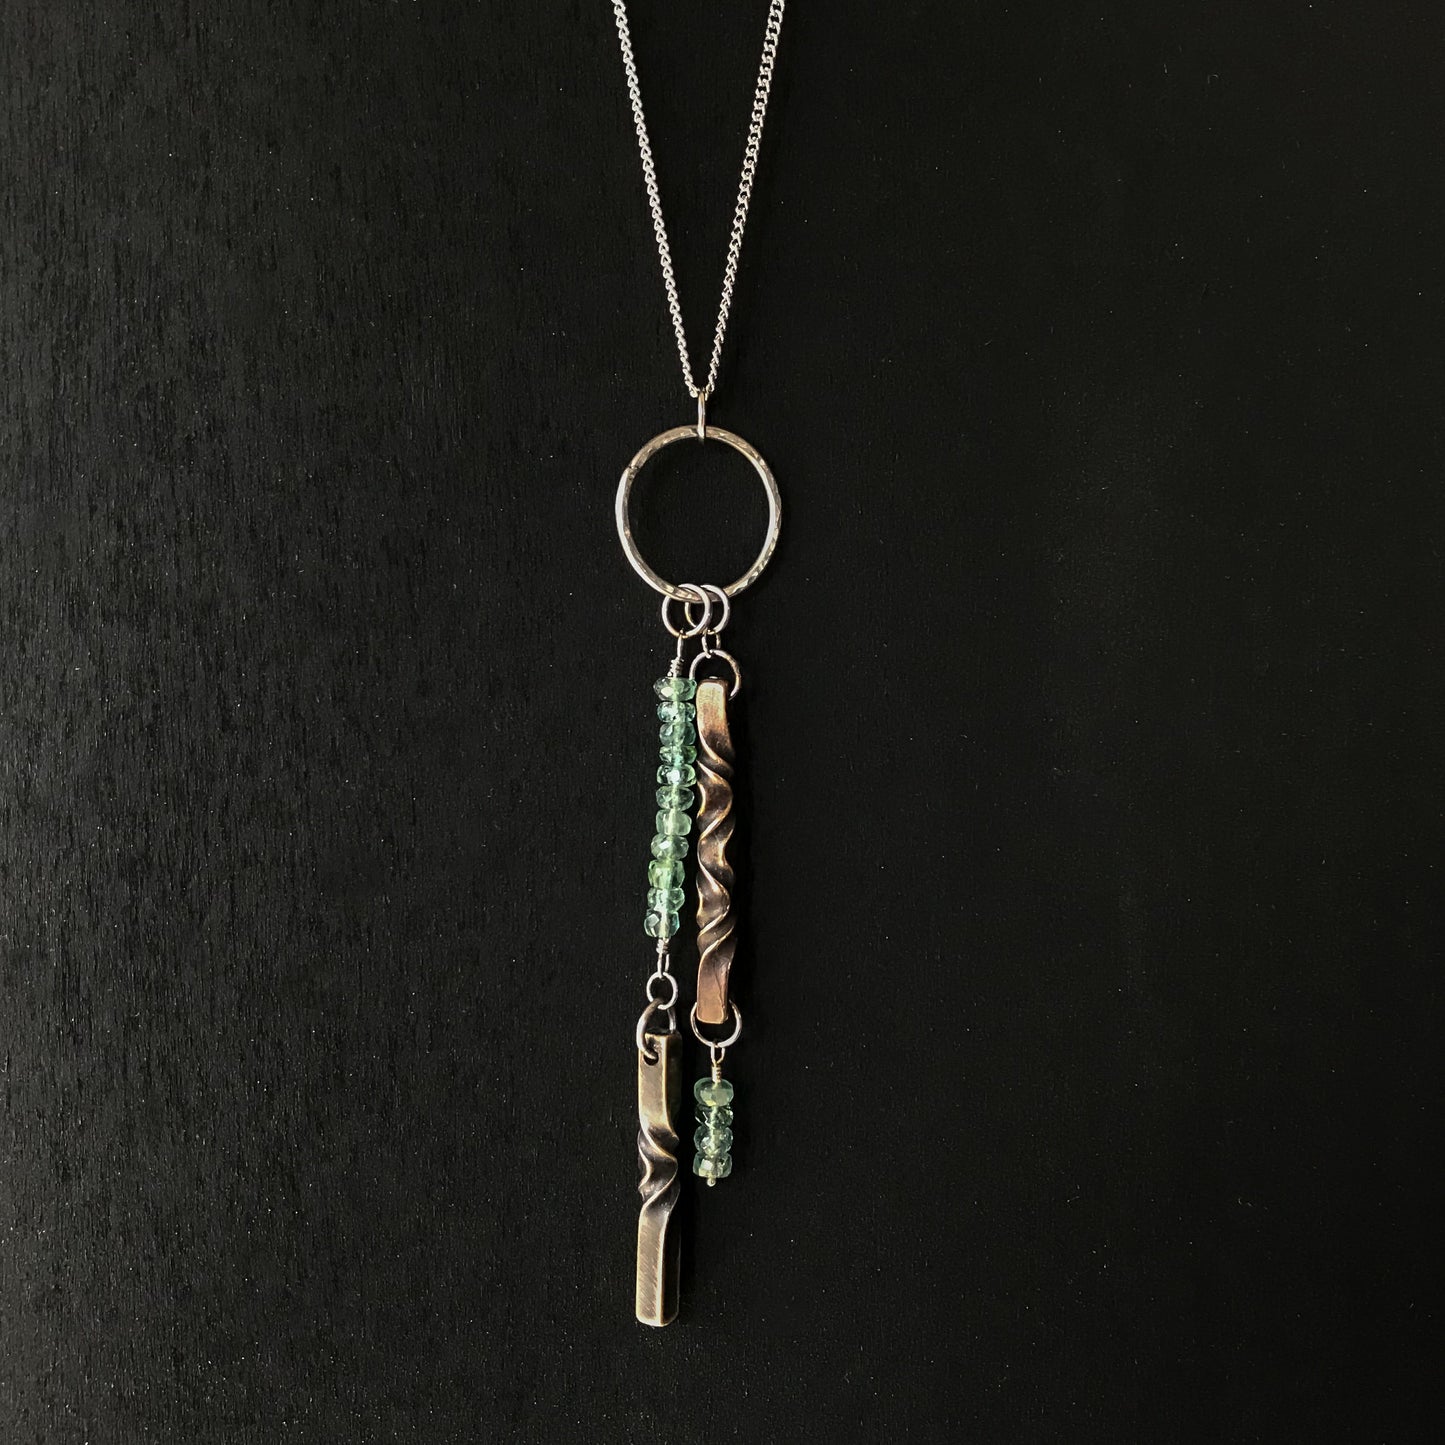 Bronze anniversary gift for her- 8th anniversary jewelry - tourmaline anniversary - handmade modern jewelry - blue/green tourmaline necklace